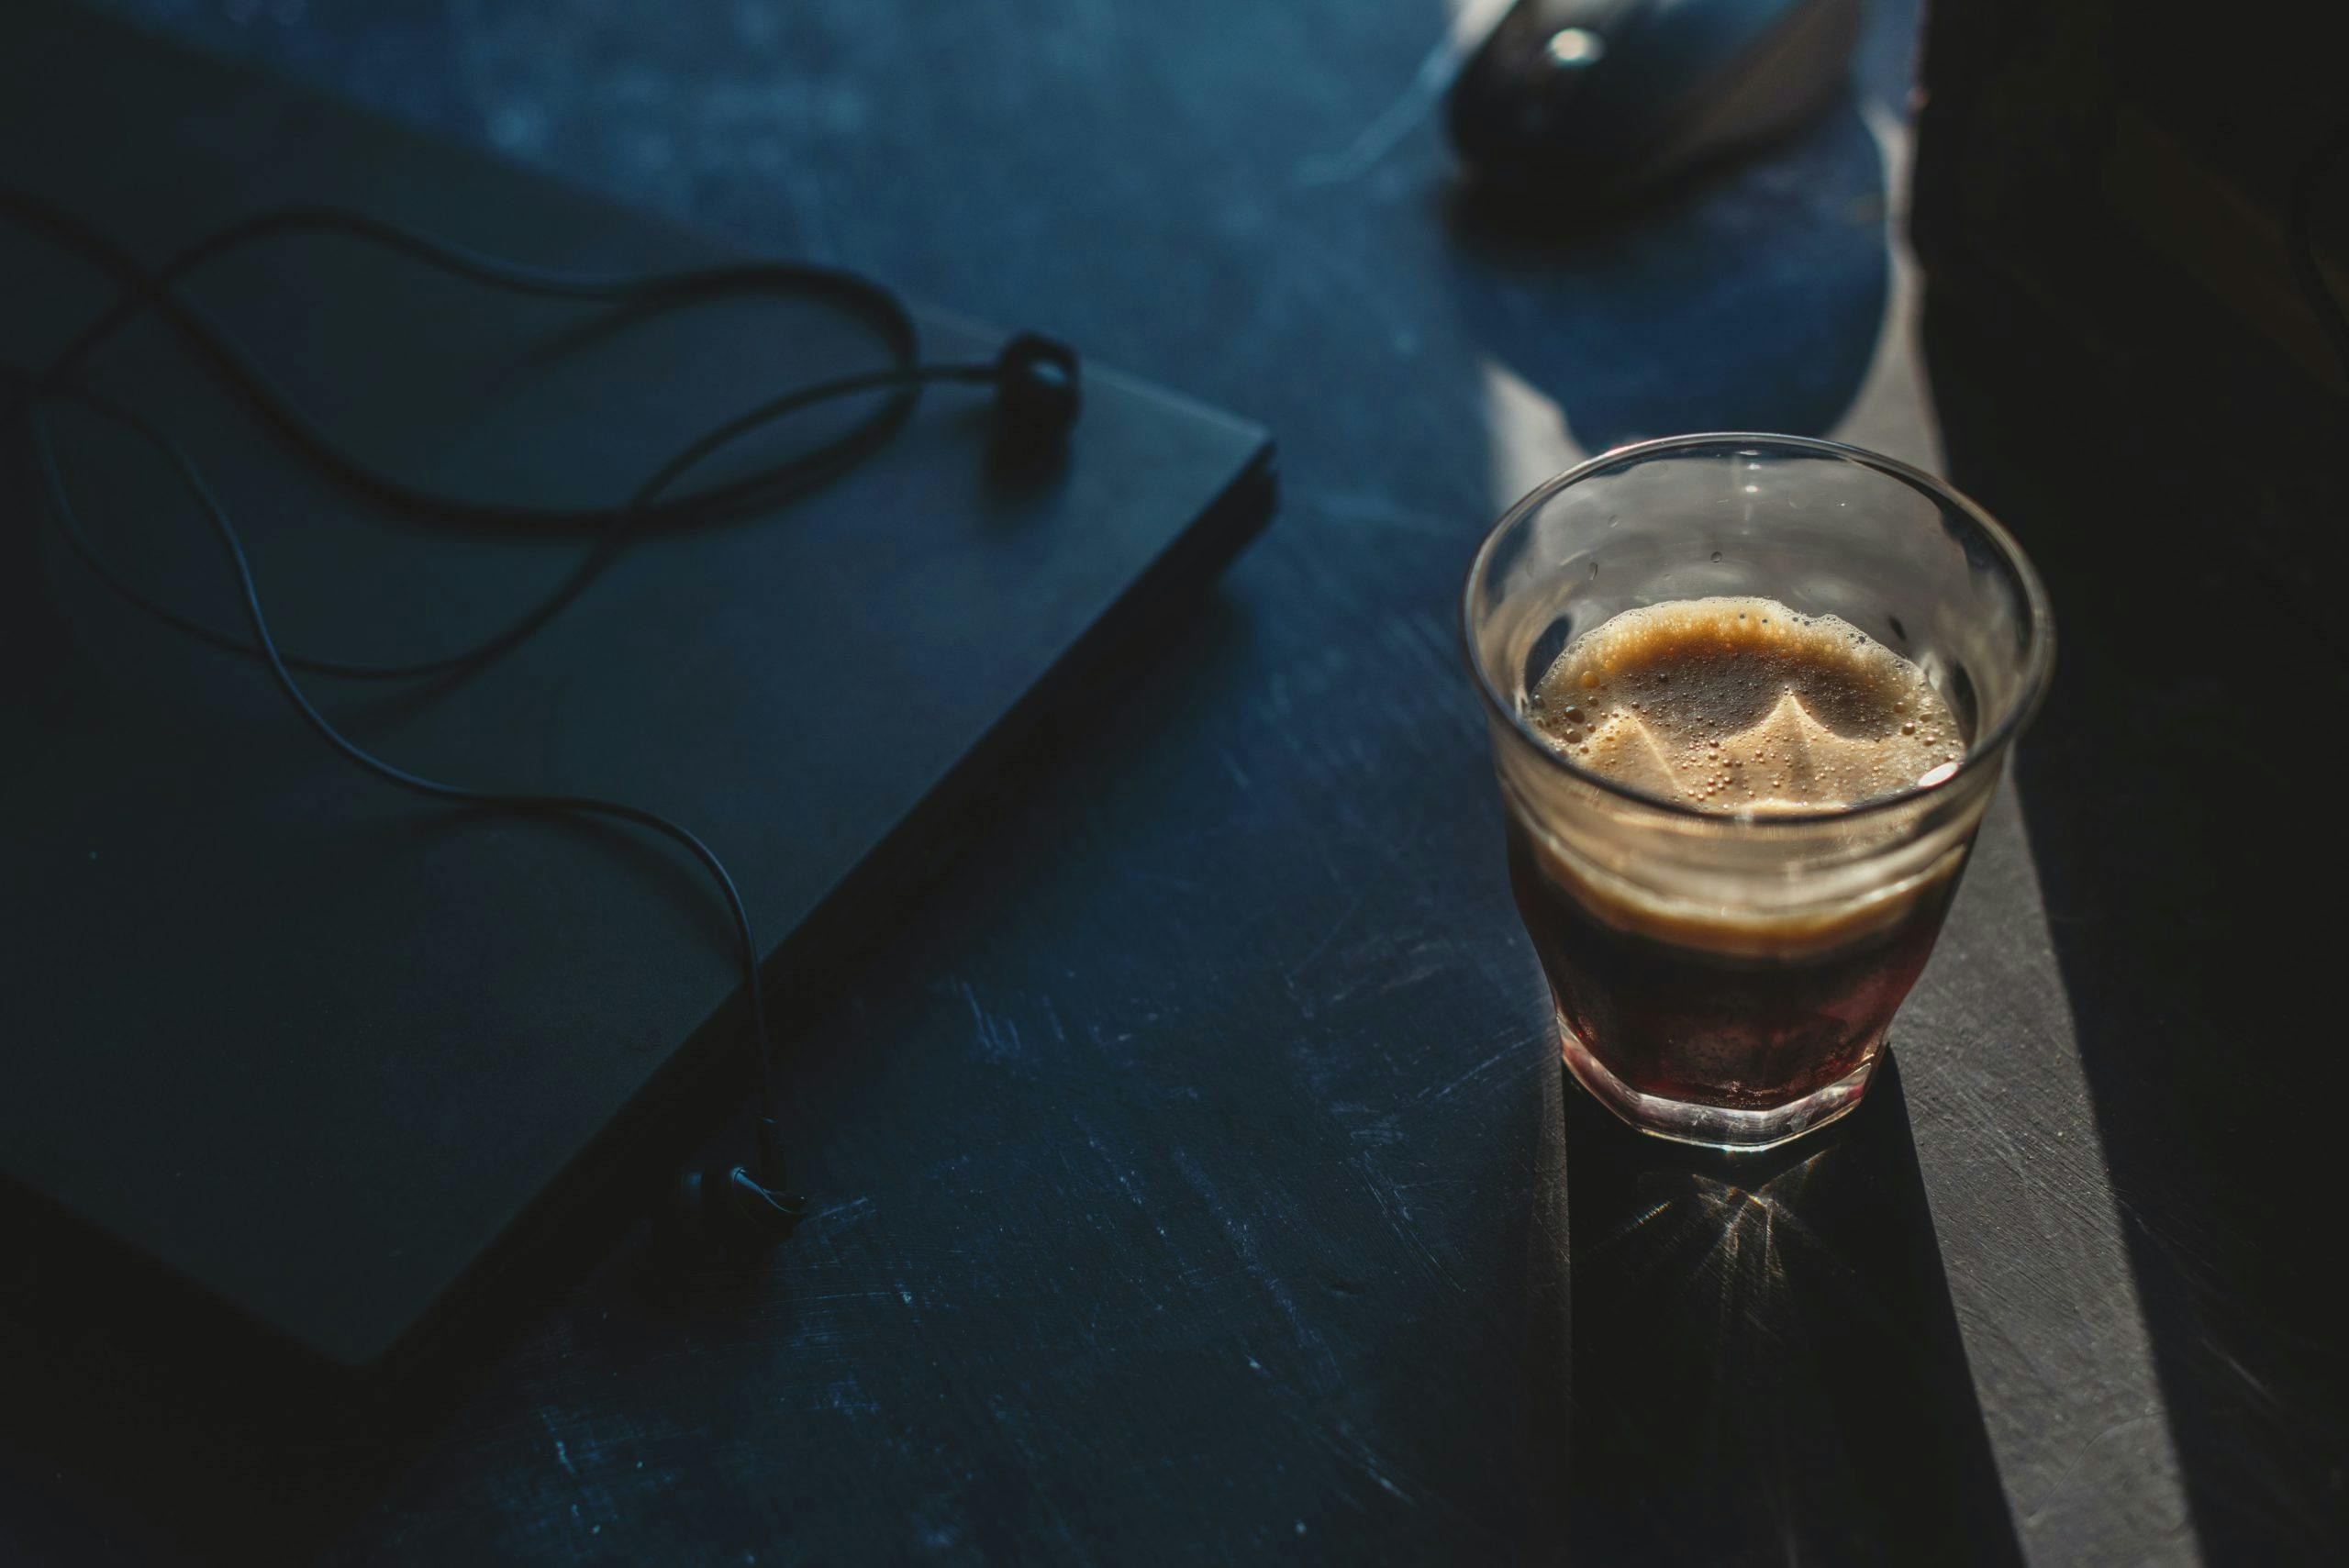 Glas med kaffe bredvid stängd laptop och hörlurar på bord